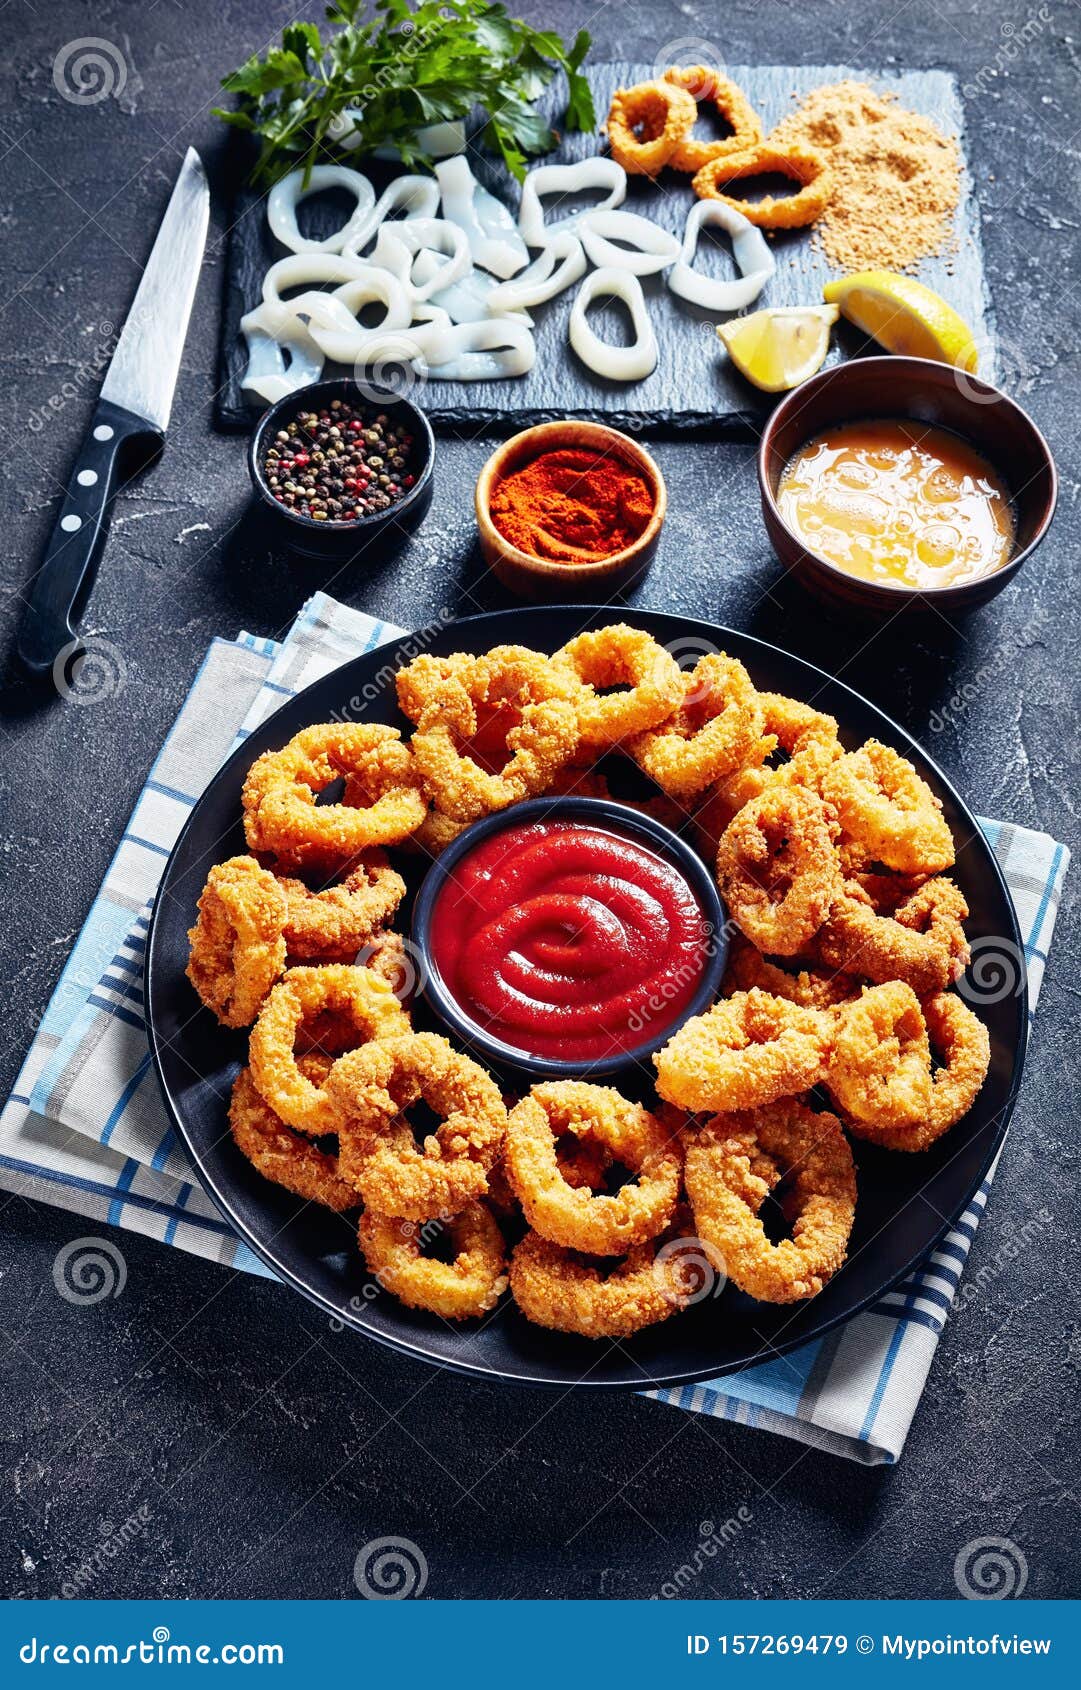 Deep Fried Crispy Calamari Rings, Vertical View Stock Image - Image of ...